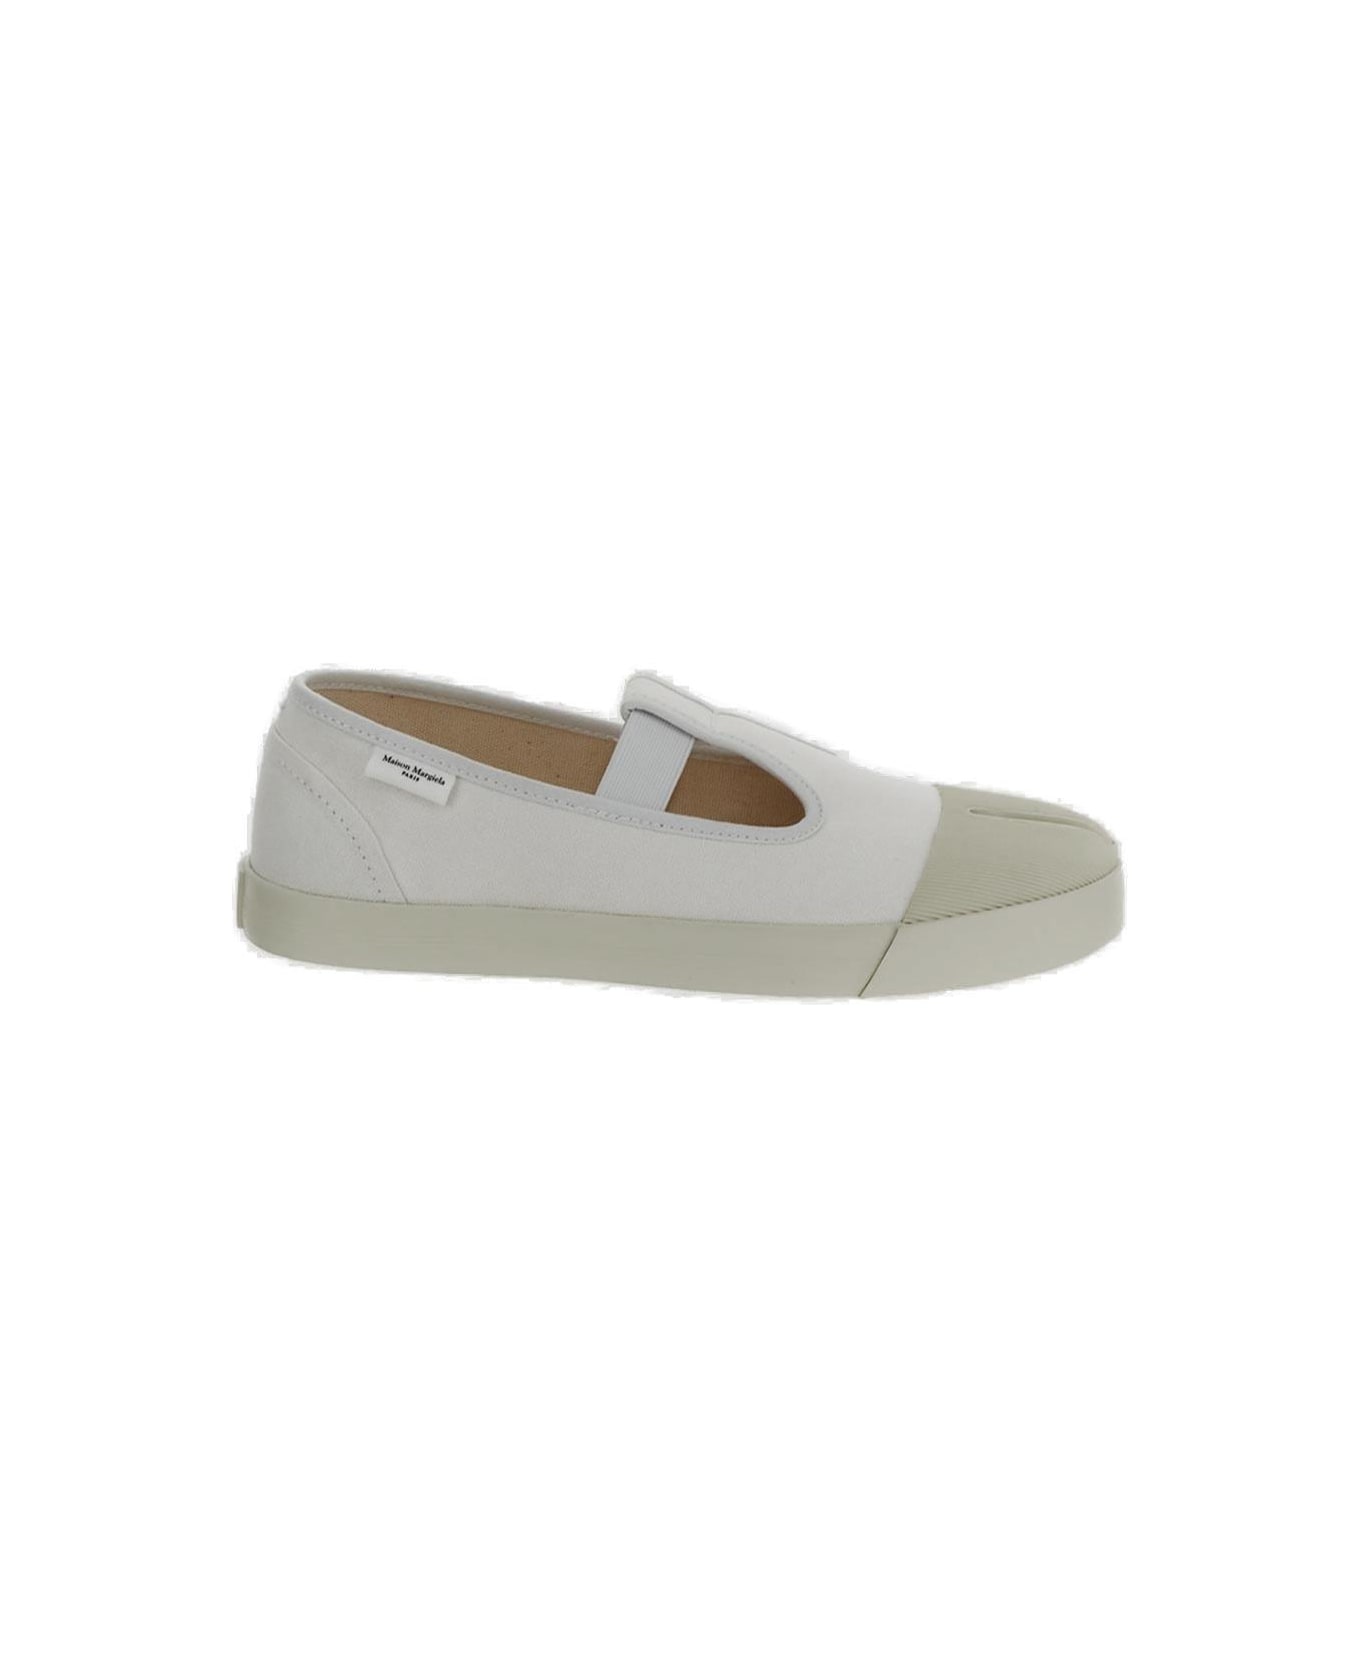 Maison Margiela On The Deck Tabi Mary Jane Shoes - WHITE